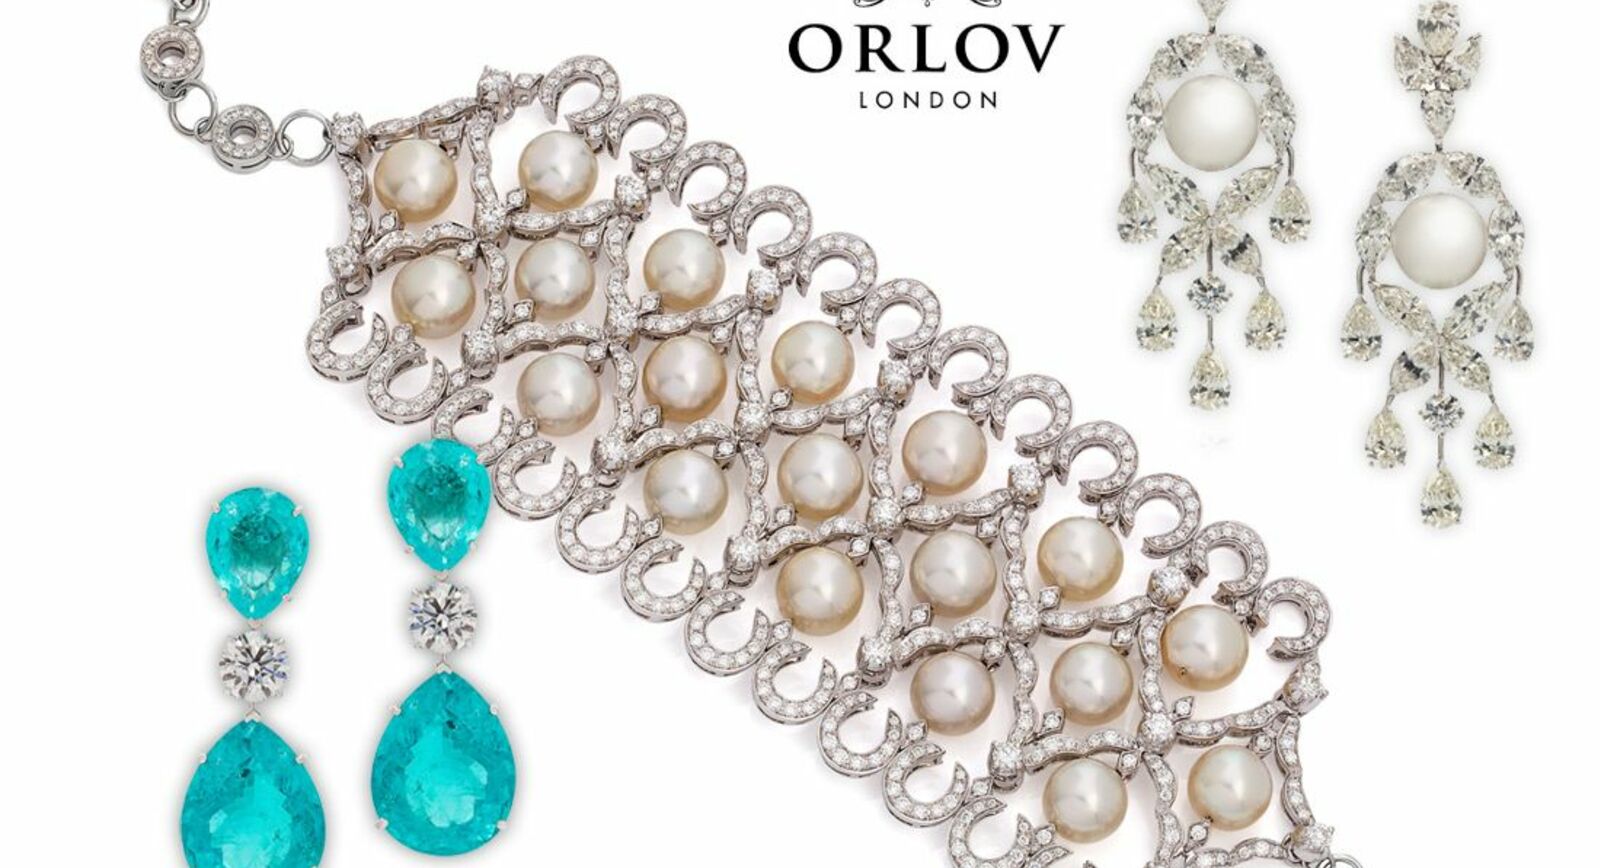 ORLOV Jewelry представят браслет за 4 миллиона евро на выставке в Монте-Карло